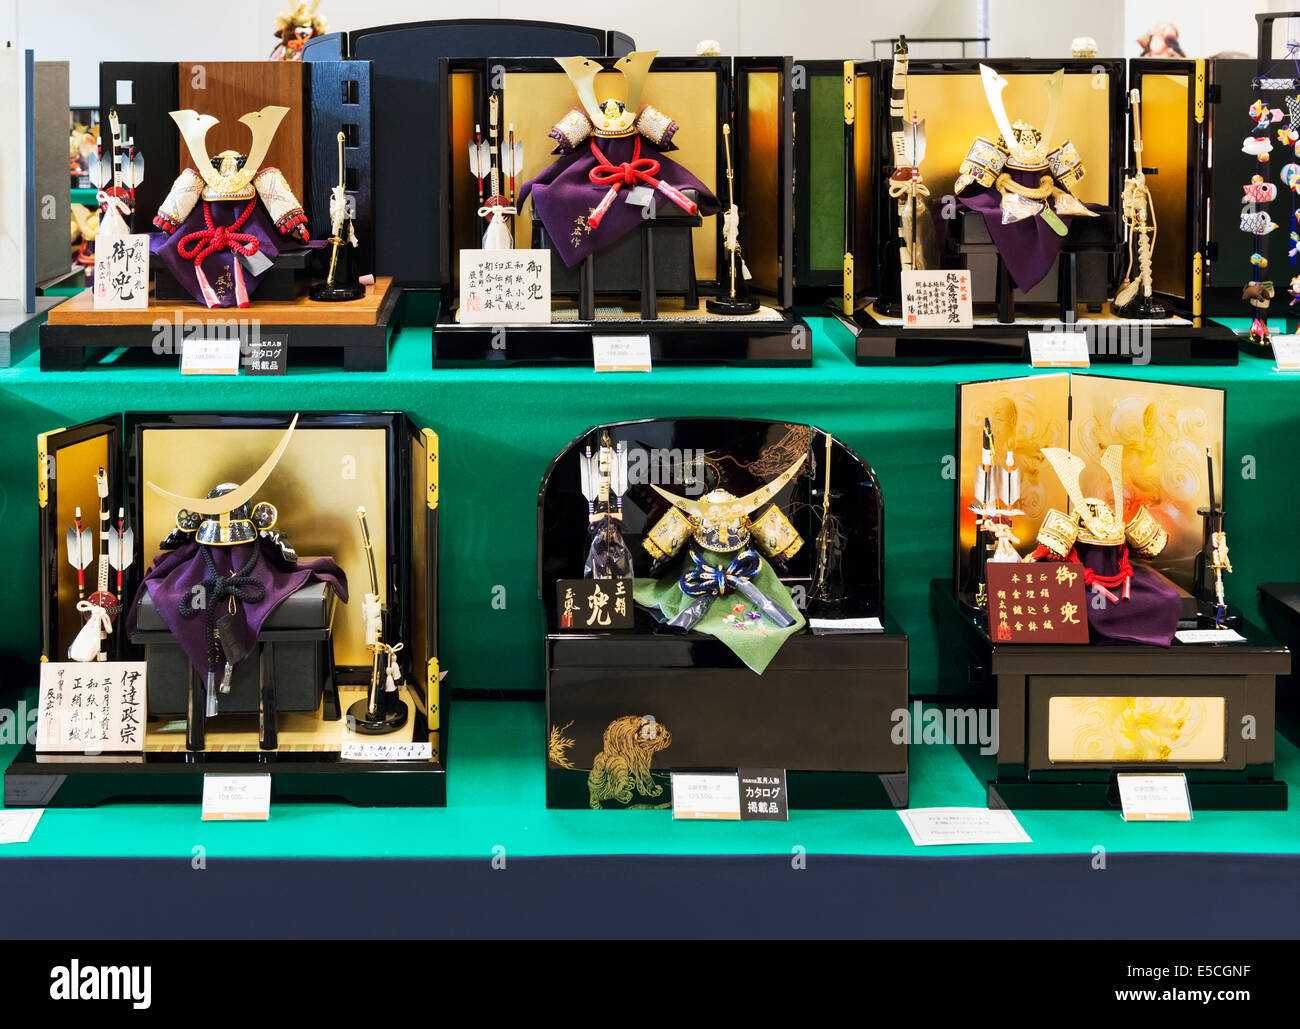 Armure de samouraï, Kabuto souvenirs casques sur l'écran dans un magasin. Tokyo, Japon. Banque D'Images